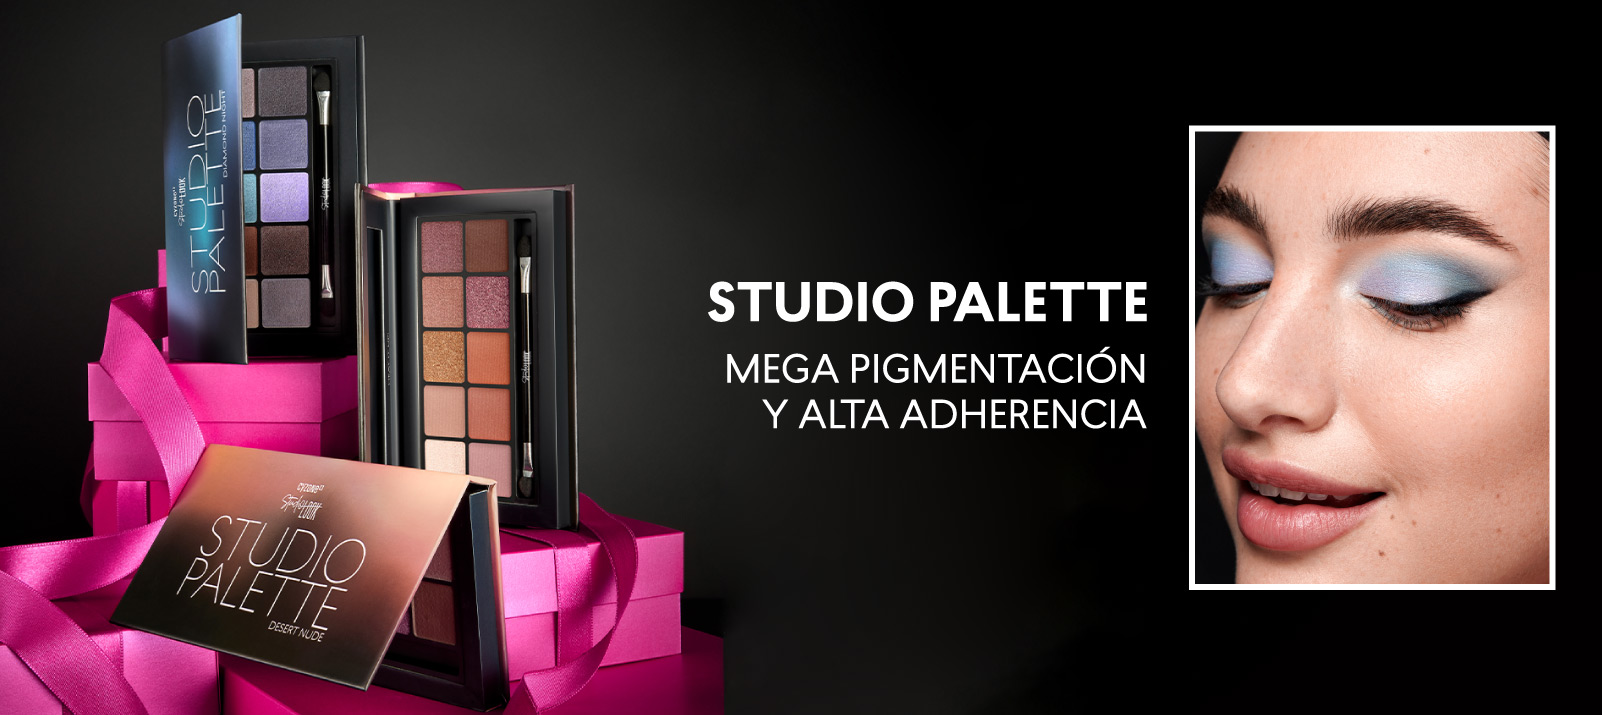 Studio Palette de Cyzone: Una paleta de maquillaje con 10 sombras imprescindibles. 